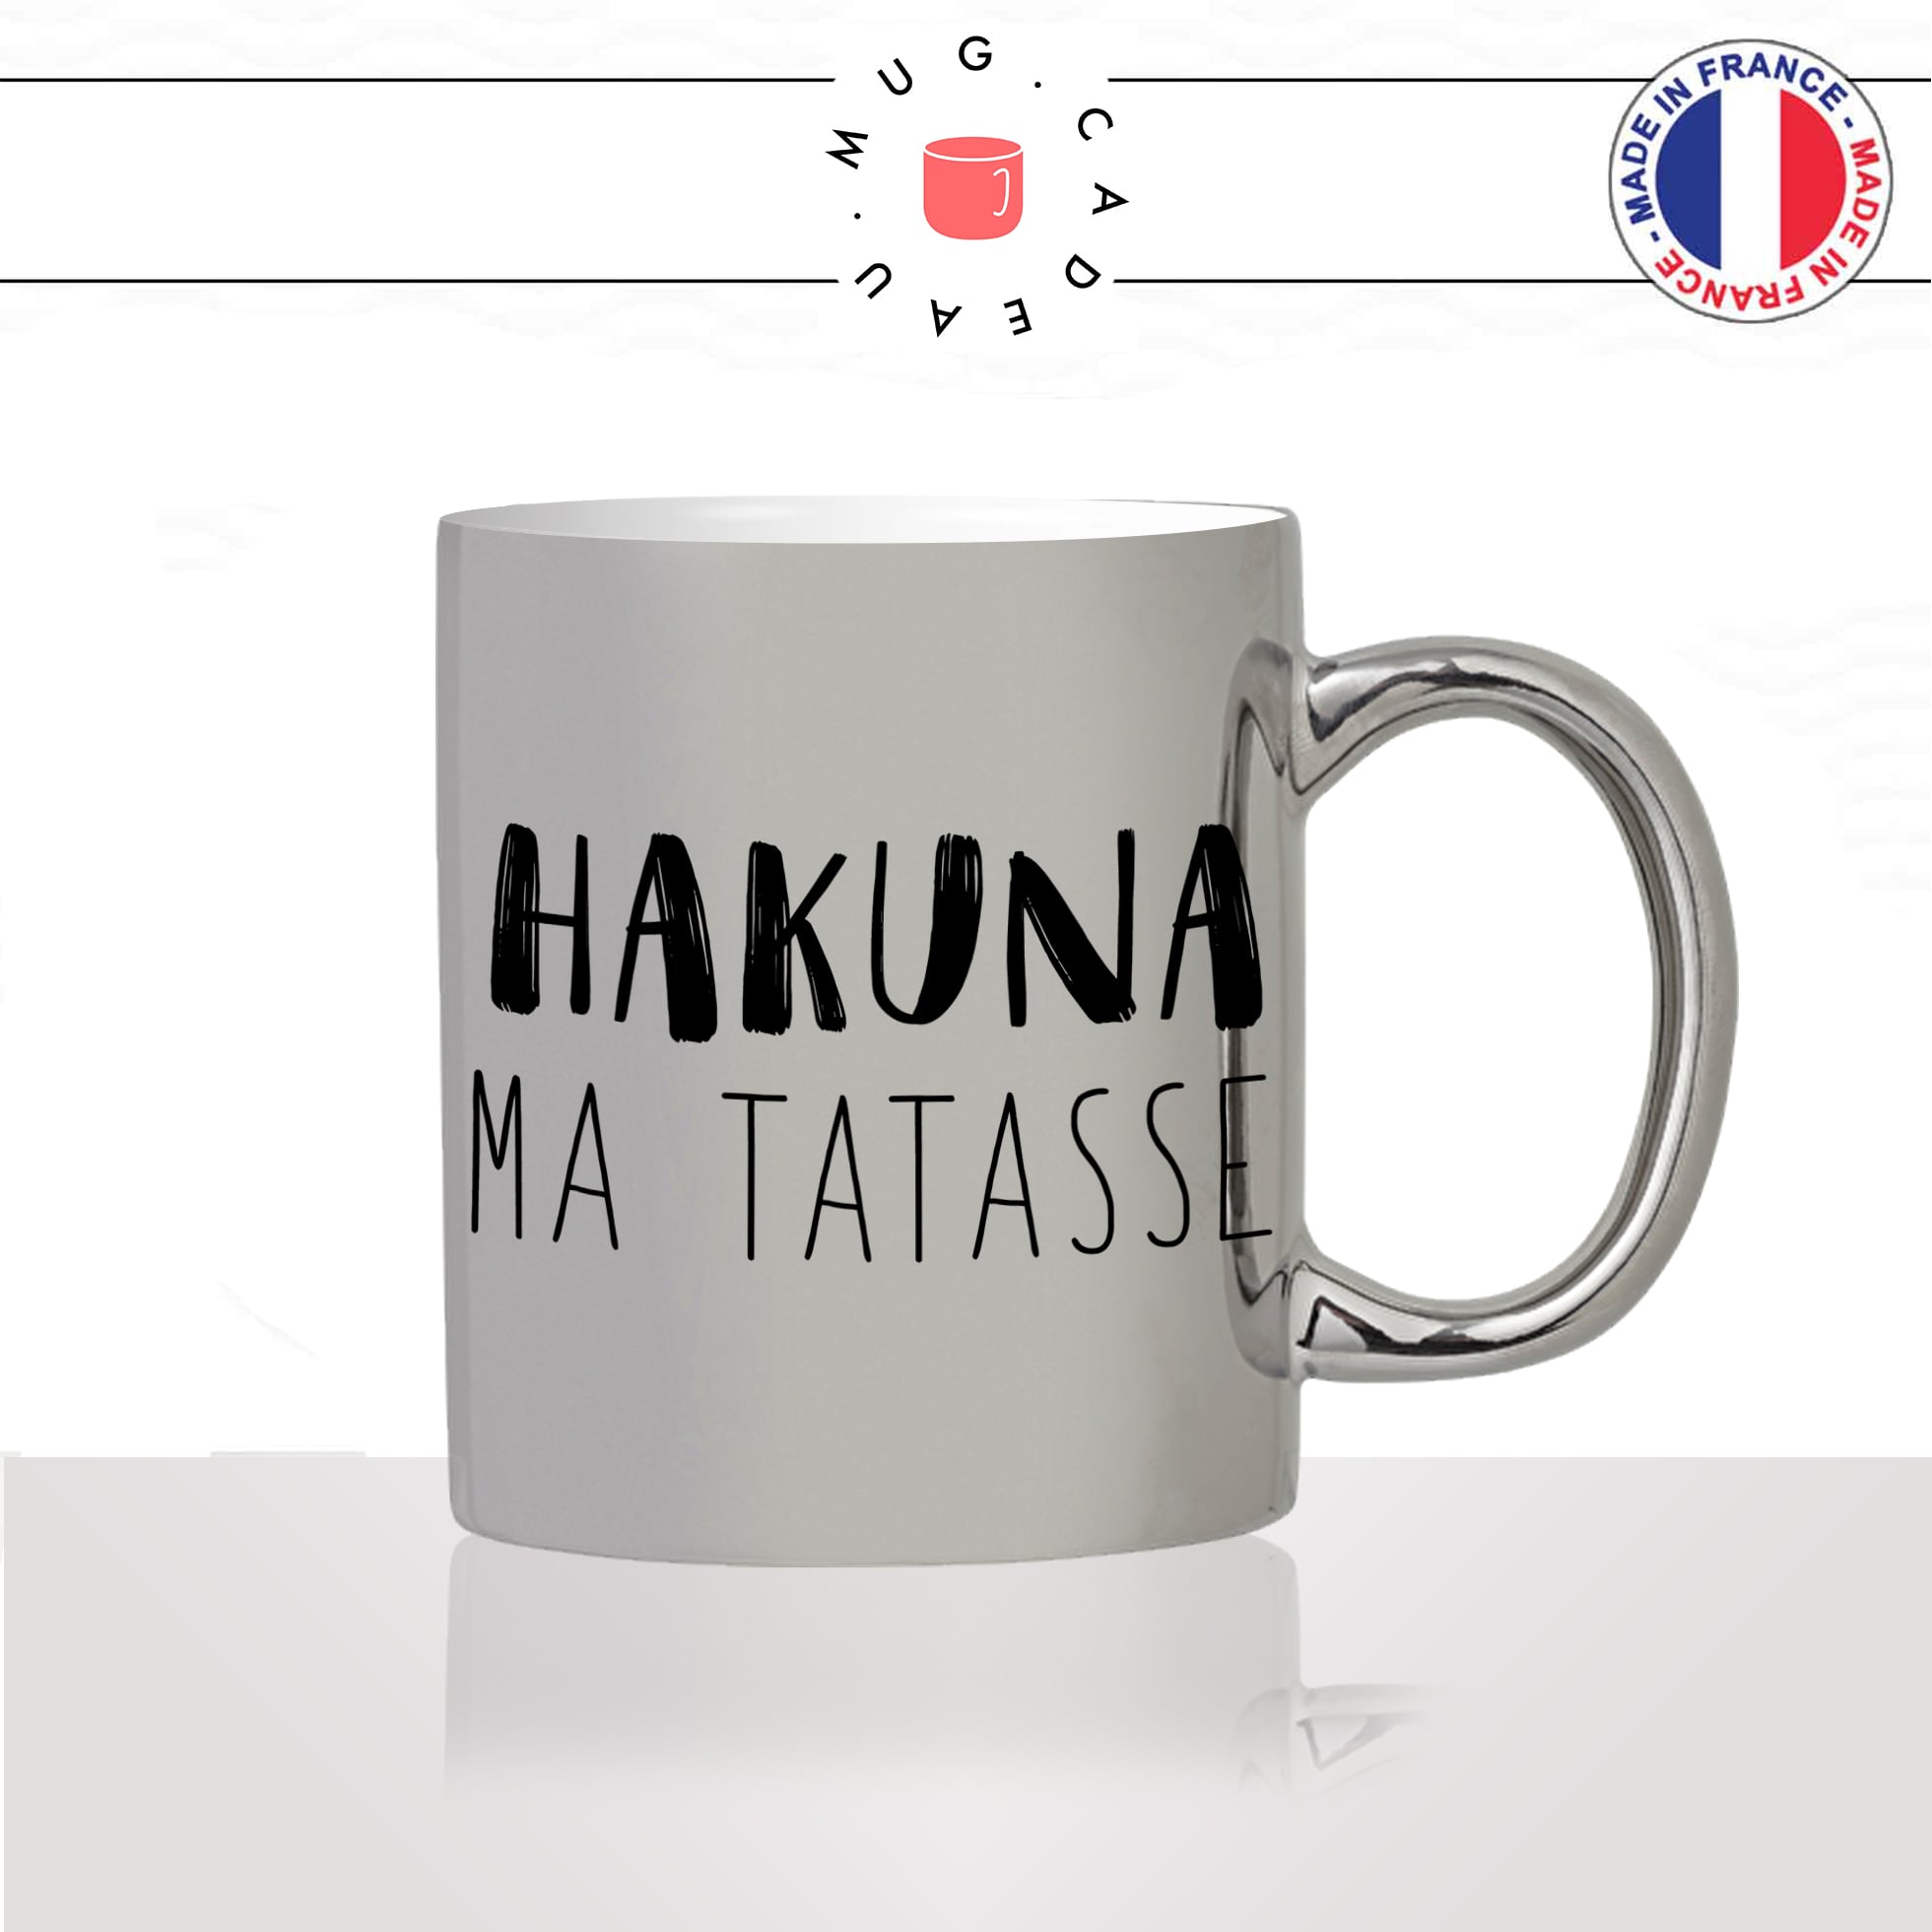 mug-tasse-argent-argenté-silver-hakuna-ma-tatasse-roi-lion-humour-collegue-copines-femme-homme-idée-cadeau-fun-cool-café-thé-original2-min